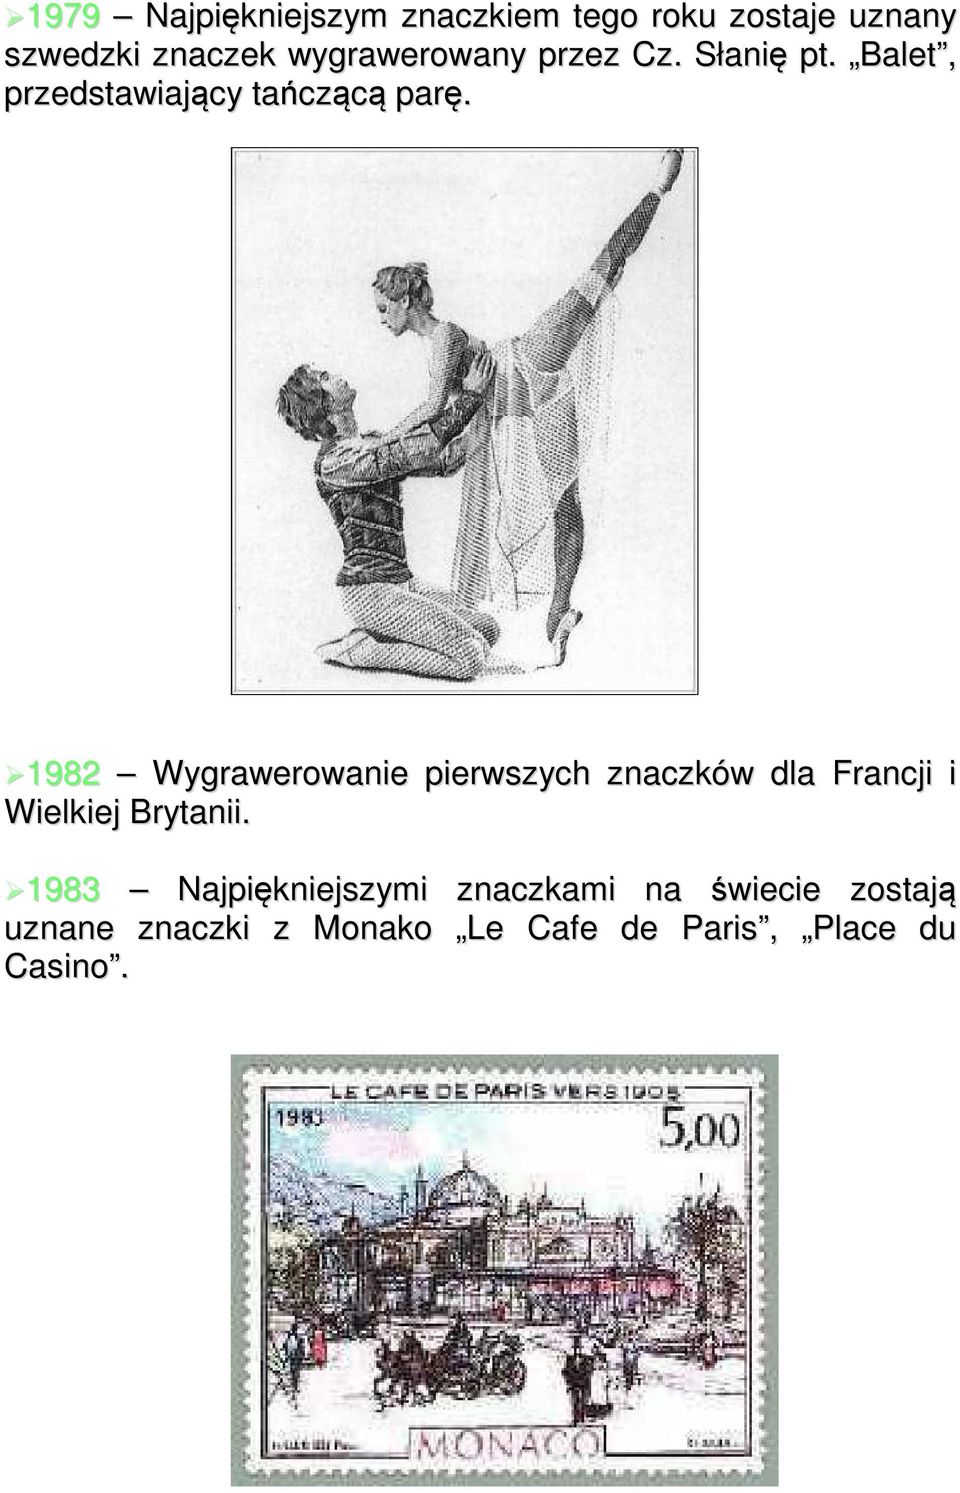 1982 Wygrawerowanie pierwszych znaczków dla Francji i Wielkiej Brytanii.